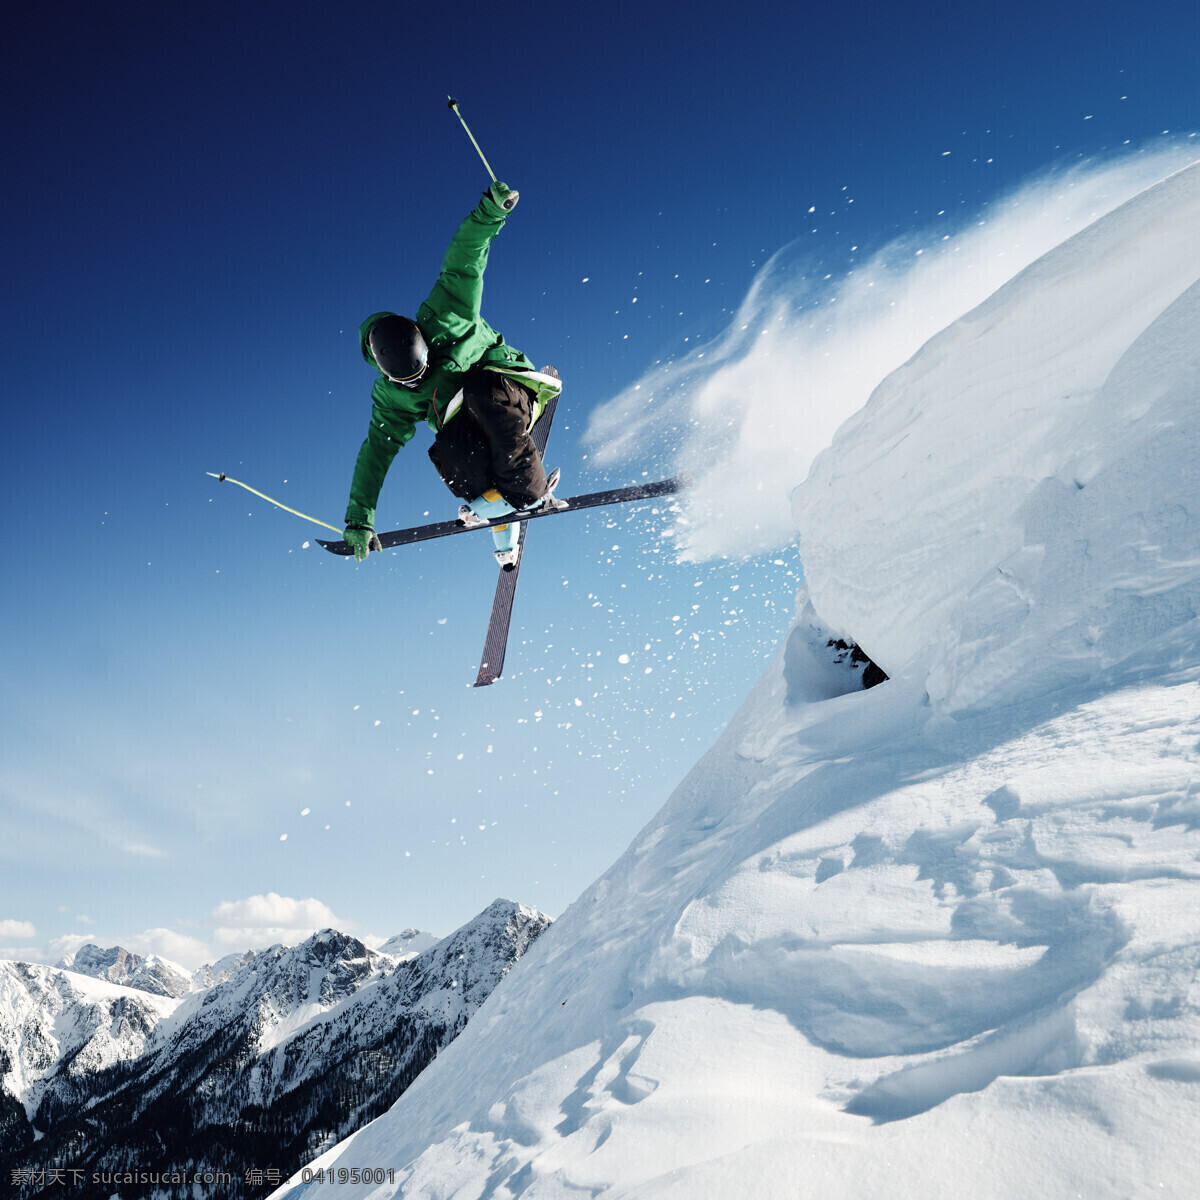 下山 坡 滑雪 运动员 雪花飞舞 高山 雪山 运动 雪地 雪花 滑雪板 户外运动 其他类别 生活百科 蓝色